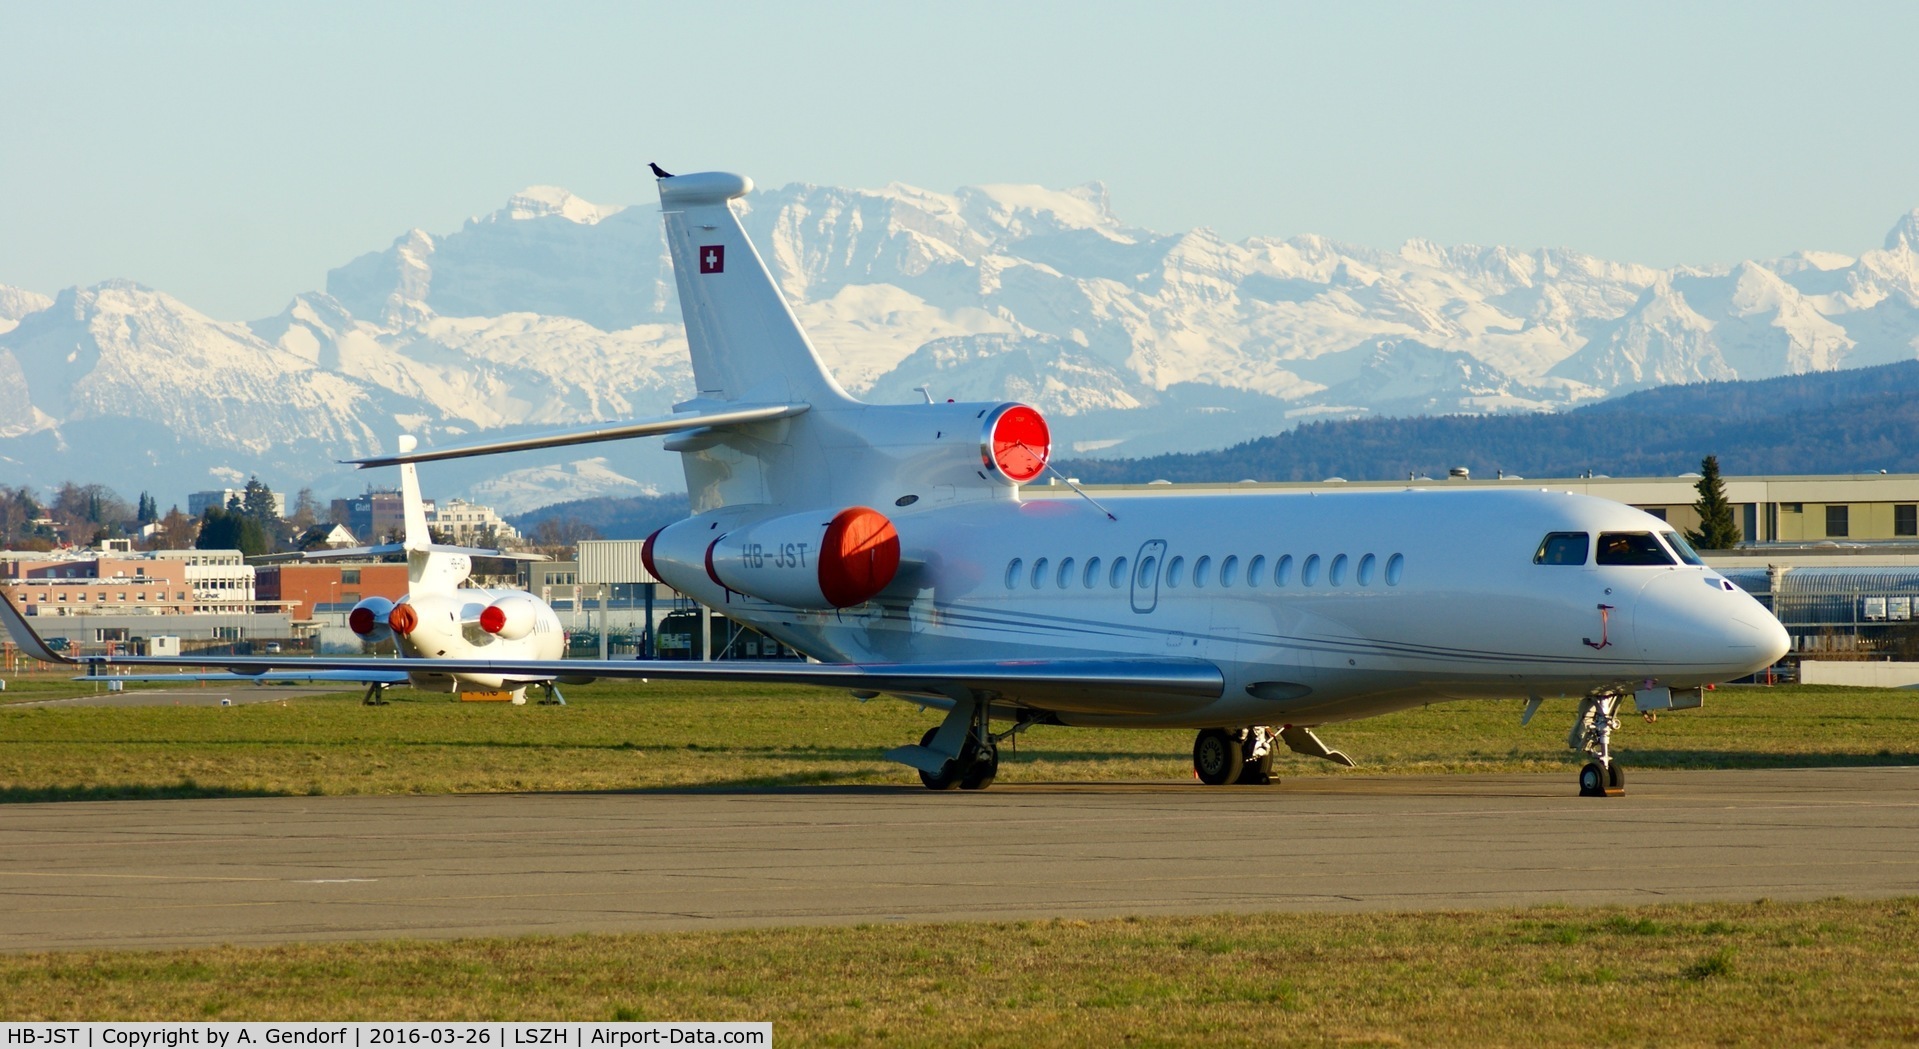 HB-JST, 2007 Dassault Falcon 7X C/N 017, CAT Aviation (untitled), is here at Zürich-Kloten(LSZH)